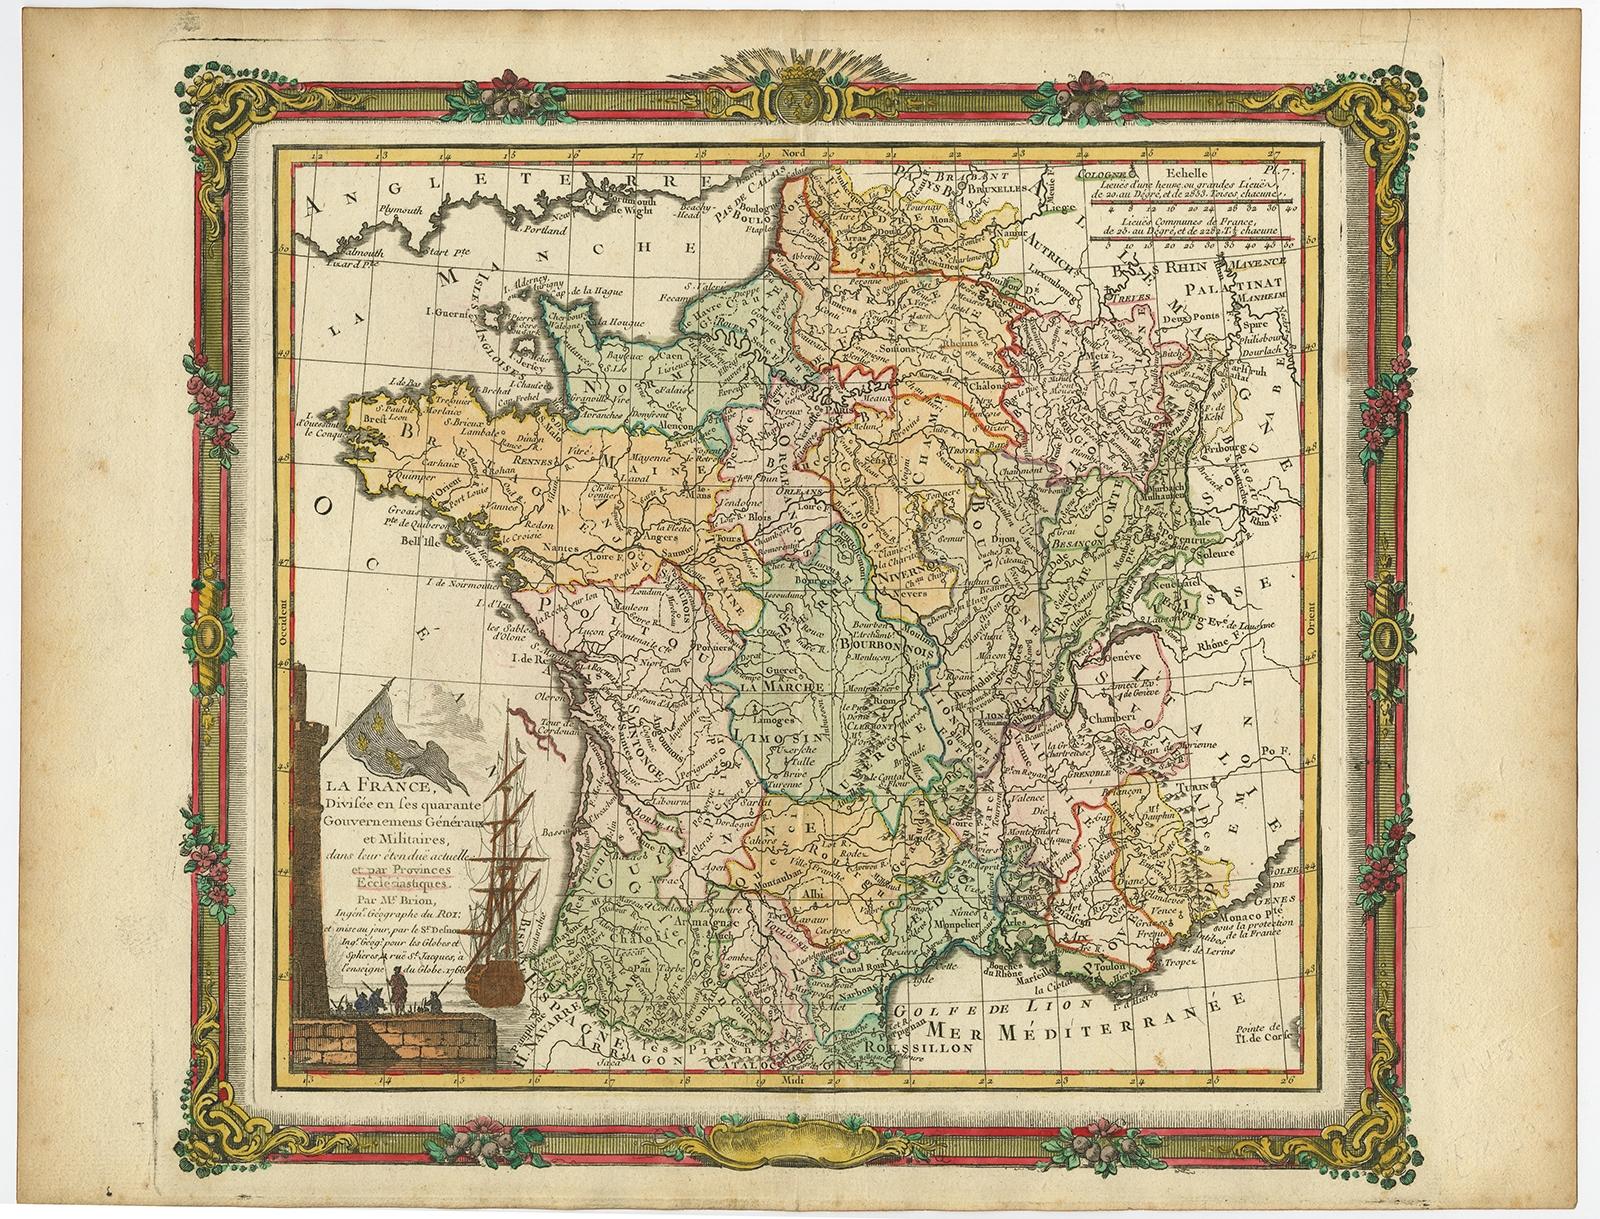 Antique map titled 'La France, divisée en ses quarante Gouvernemens Généraux.' Attractive map of France by Brion de la Tour, published by Desnos. The decorative border was printed from a separate copper plate. Source unknown, to be